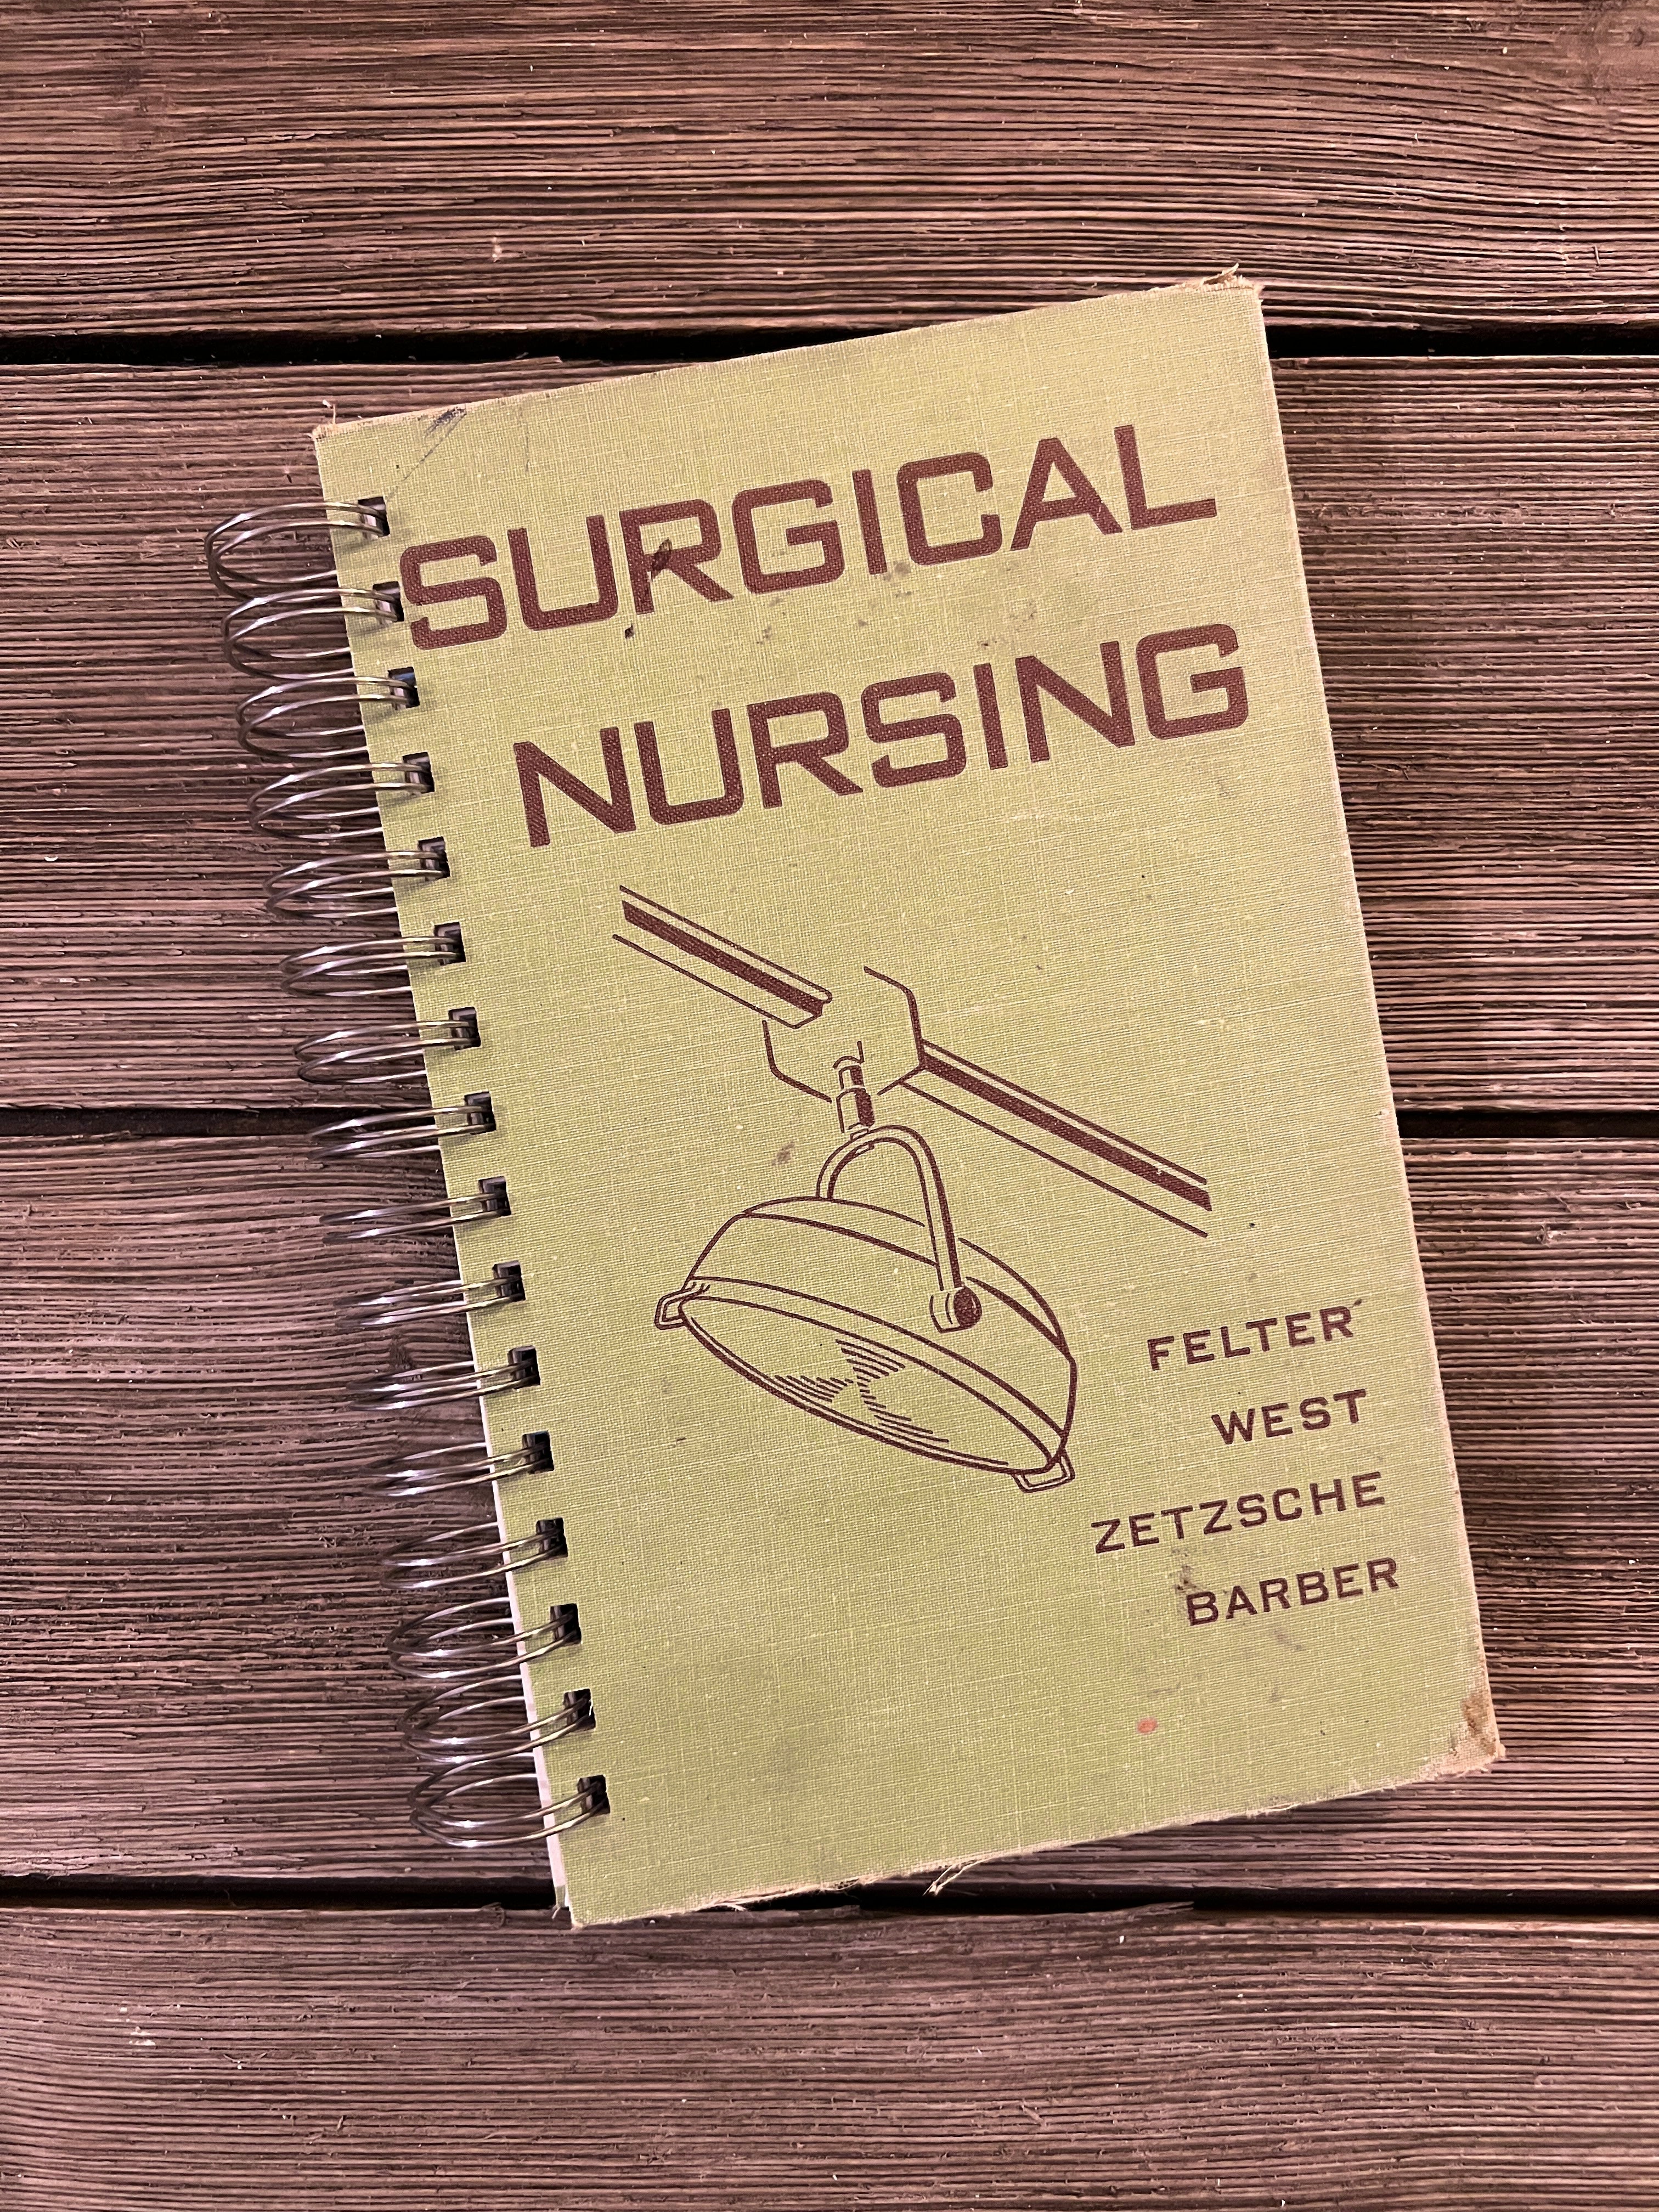 Surgical Nursing